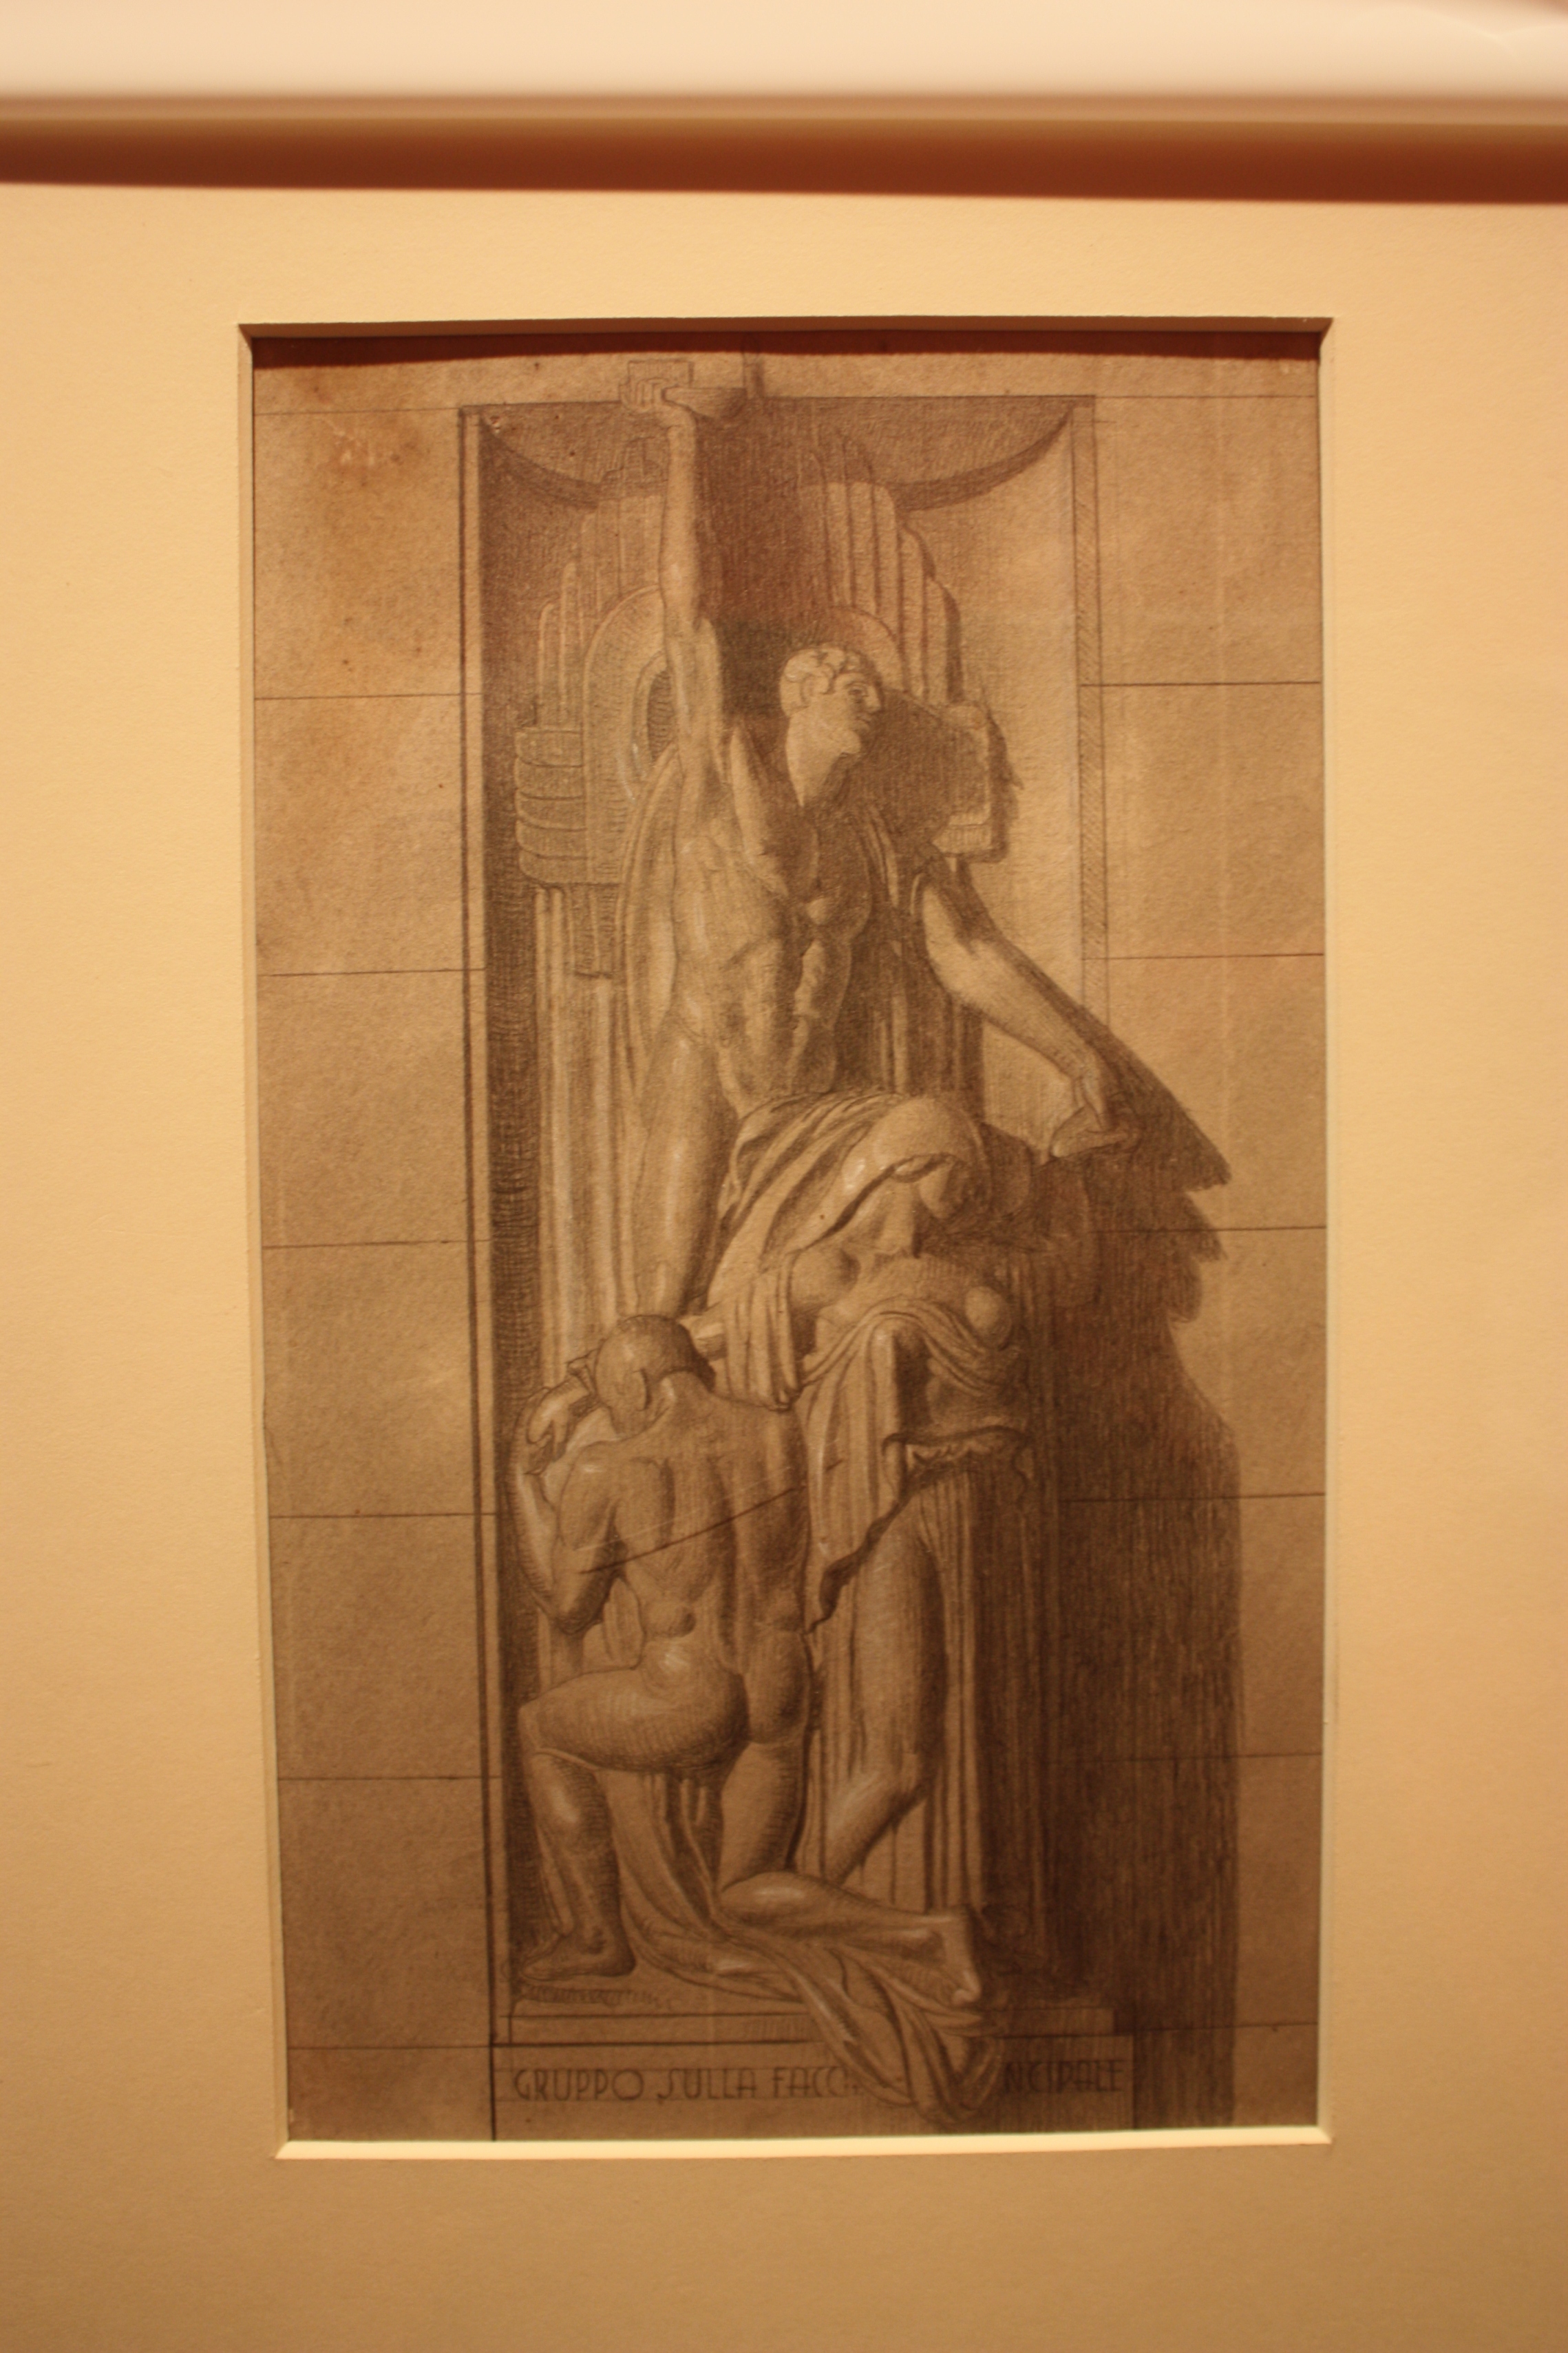 Bozzetto per tomba monumentale, bozzetto di decorazione scultorea (disegno preparatorio, opera isolata) di Tarquini Sabatino (attribuito) (secondo quarto XX)